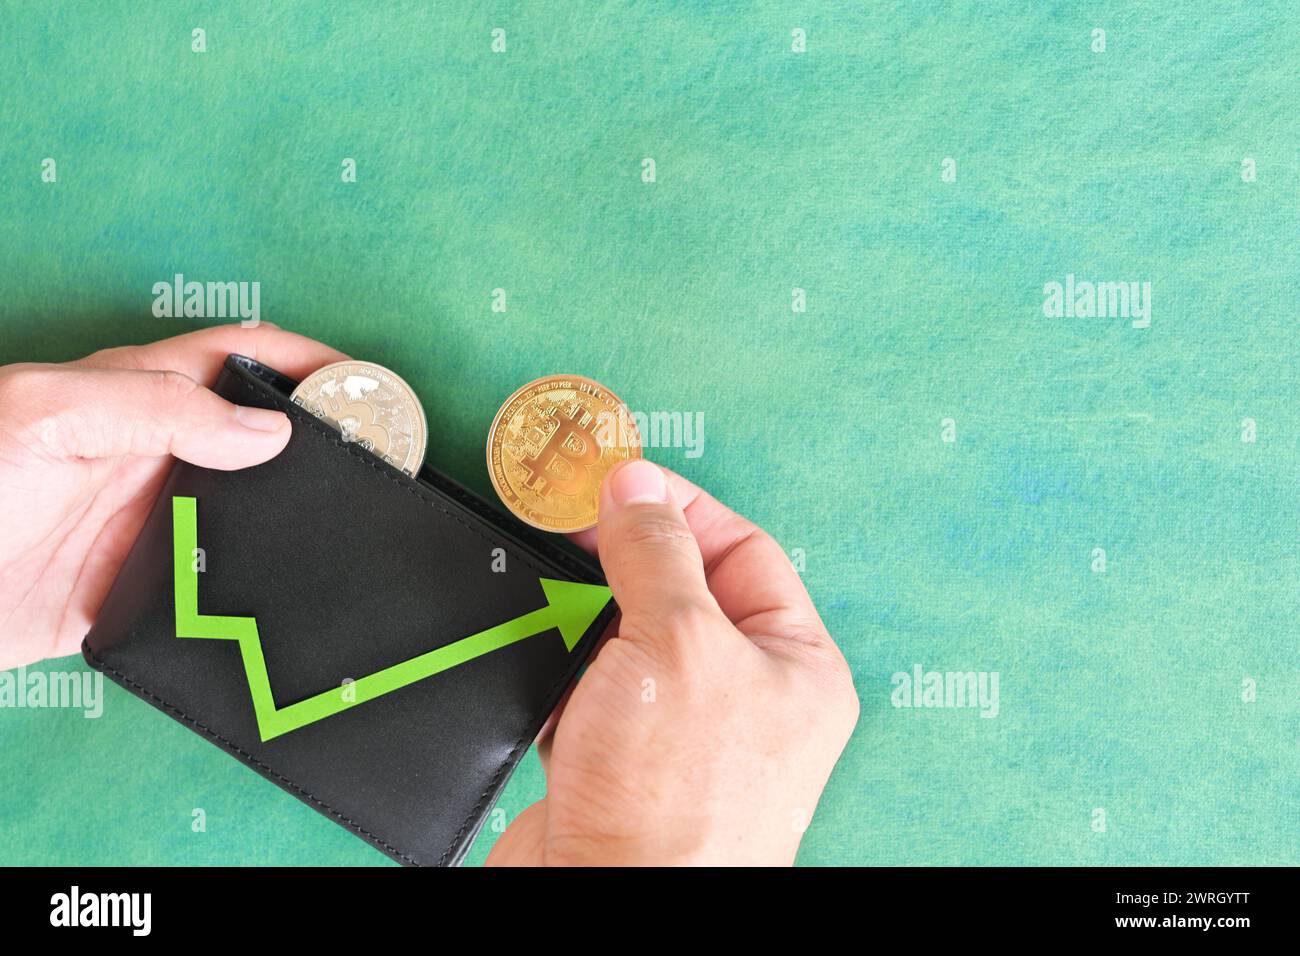 Menschliche Hand, die schwarz eine Brieftasche mit Bitcoin und aufwärts grüner Pfeilmünze hält. Kryptowährungs-Bull-Run und Bewertungssteigerung Konzept. Stockfoto